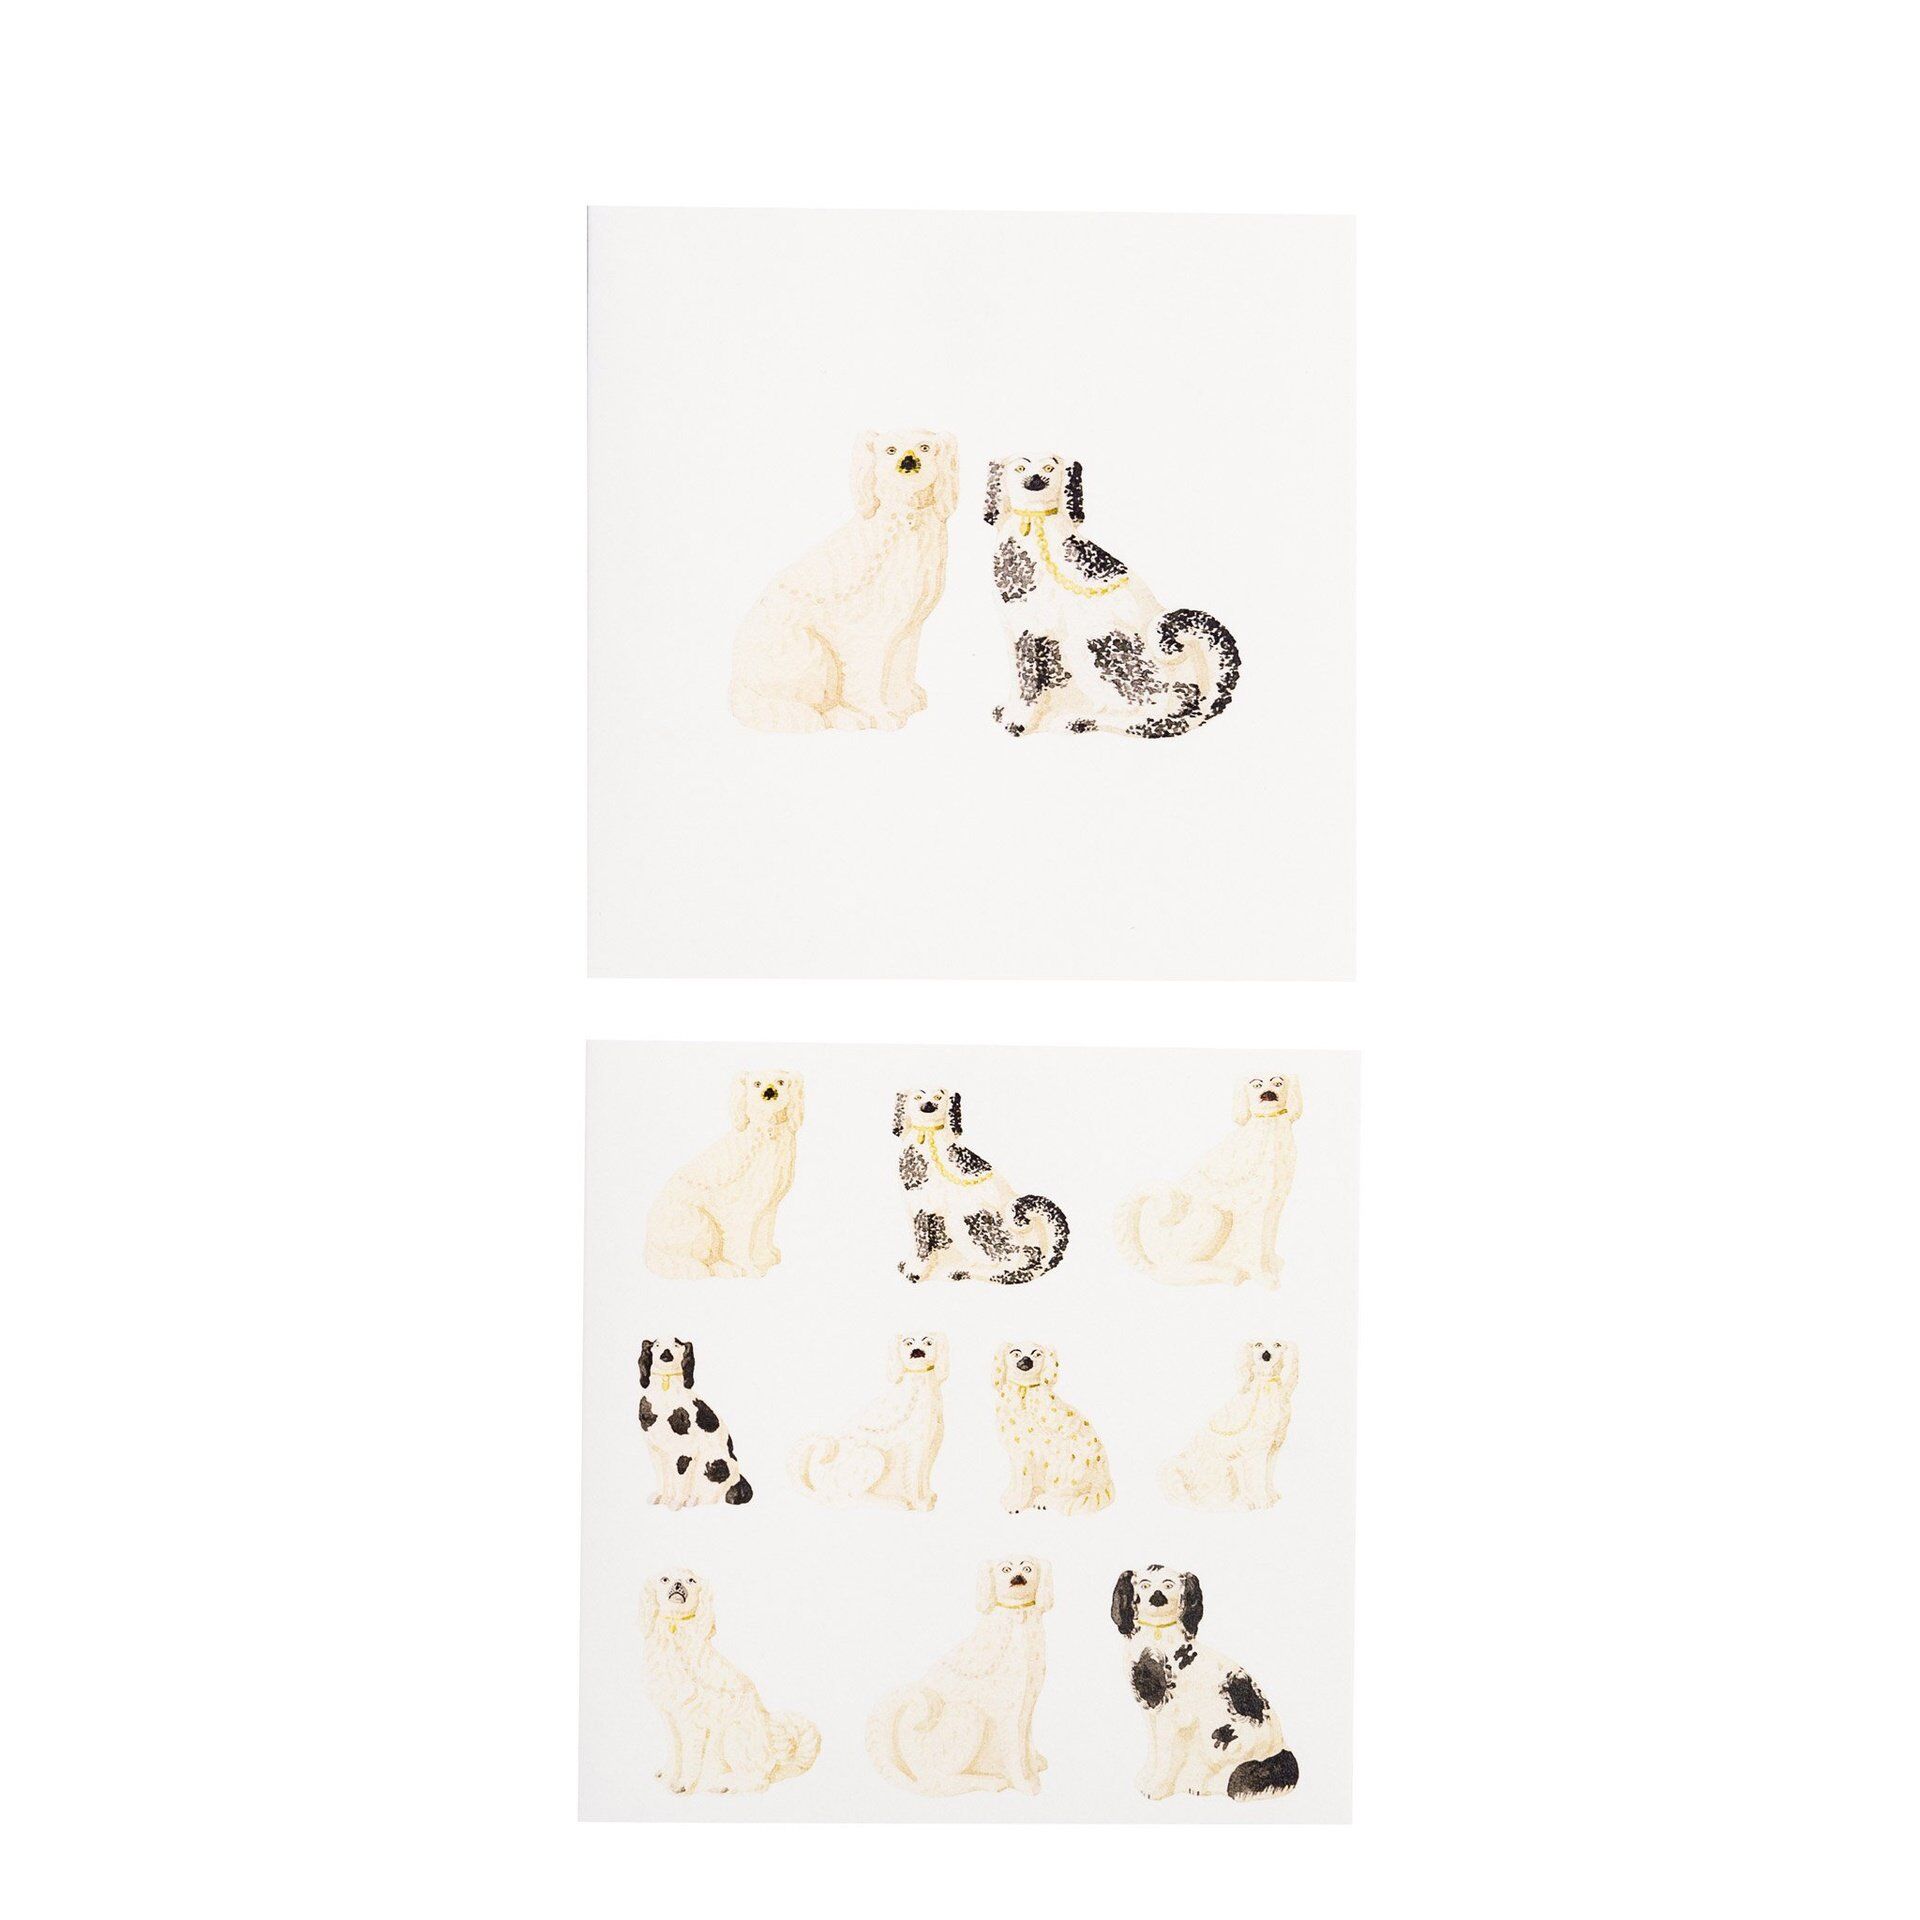 Card Set (Wallet): Laura Stoddart - Odd Dogs - Notecards